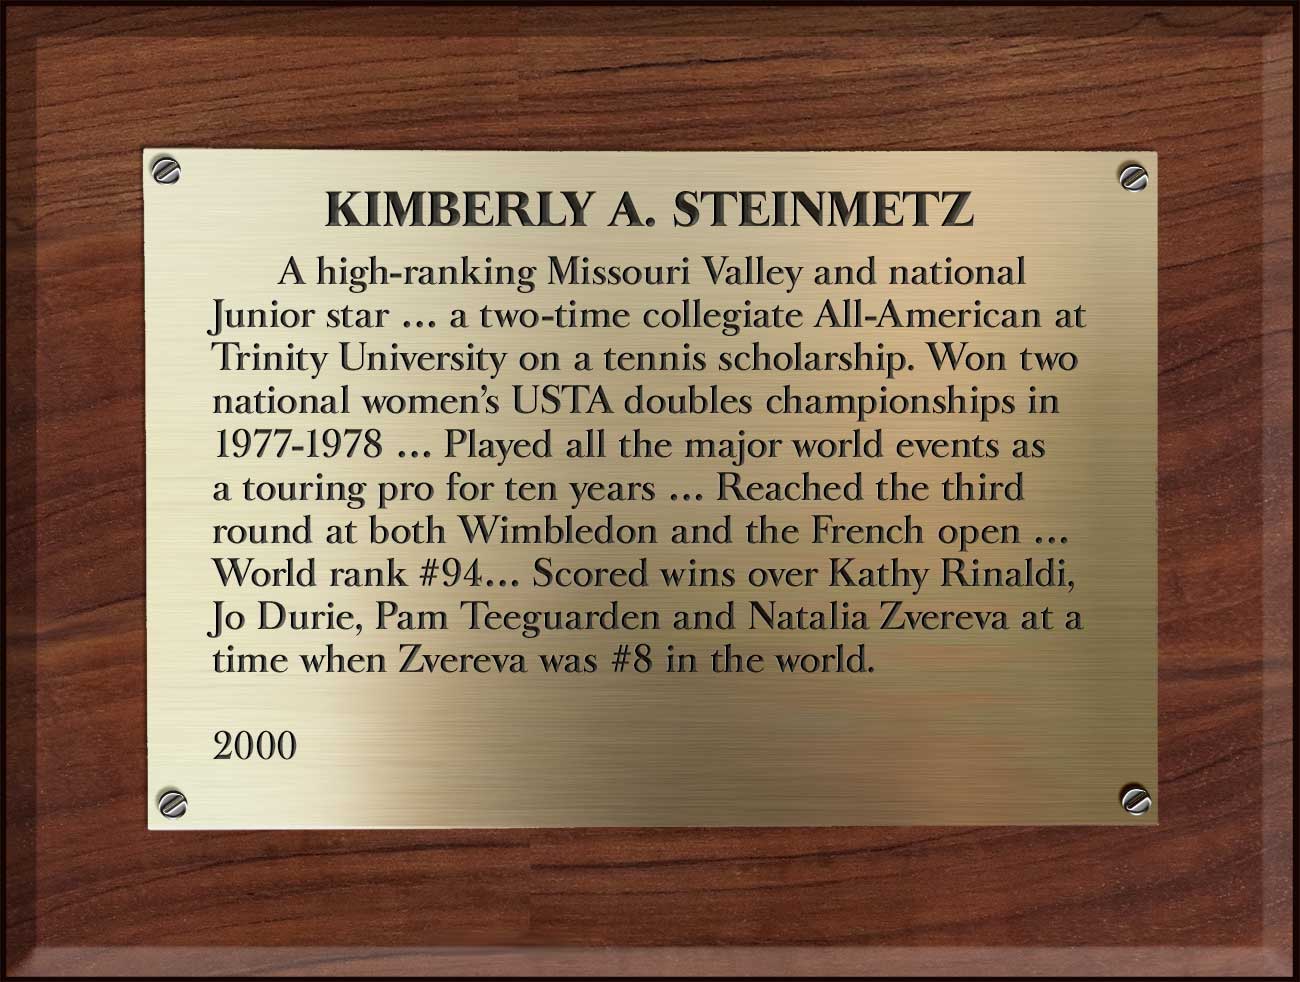 Kim Steinmetz